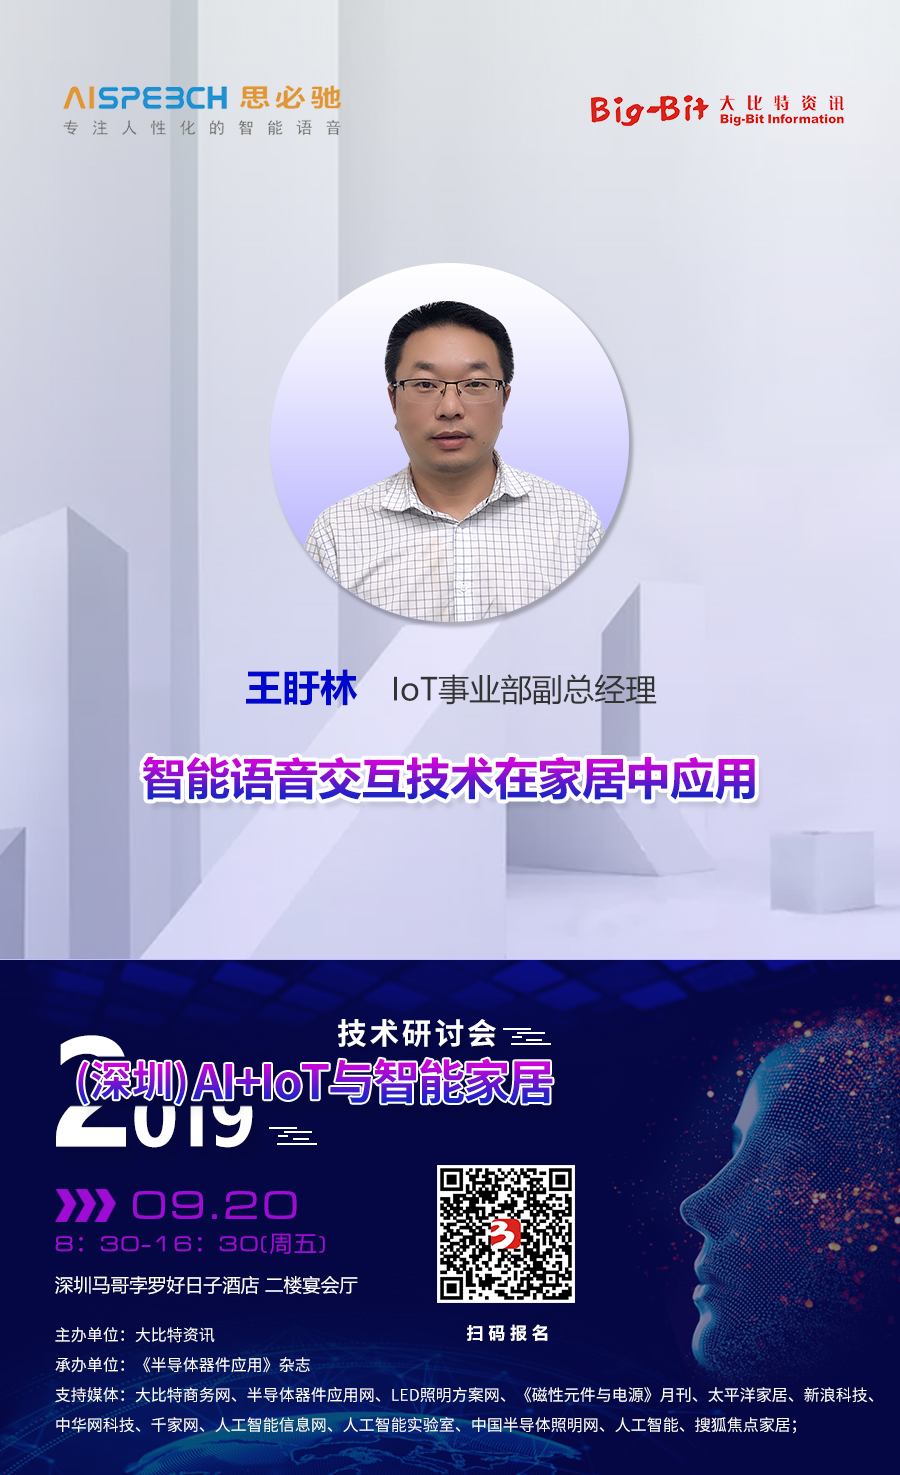 思必驰IoT事业部副总经理王盱林将出席“2019'(深圳)AI+IoT与智能家居技术研讨会”